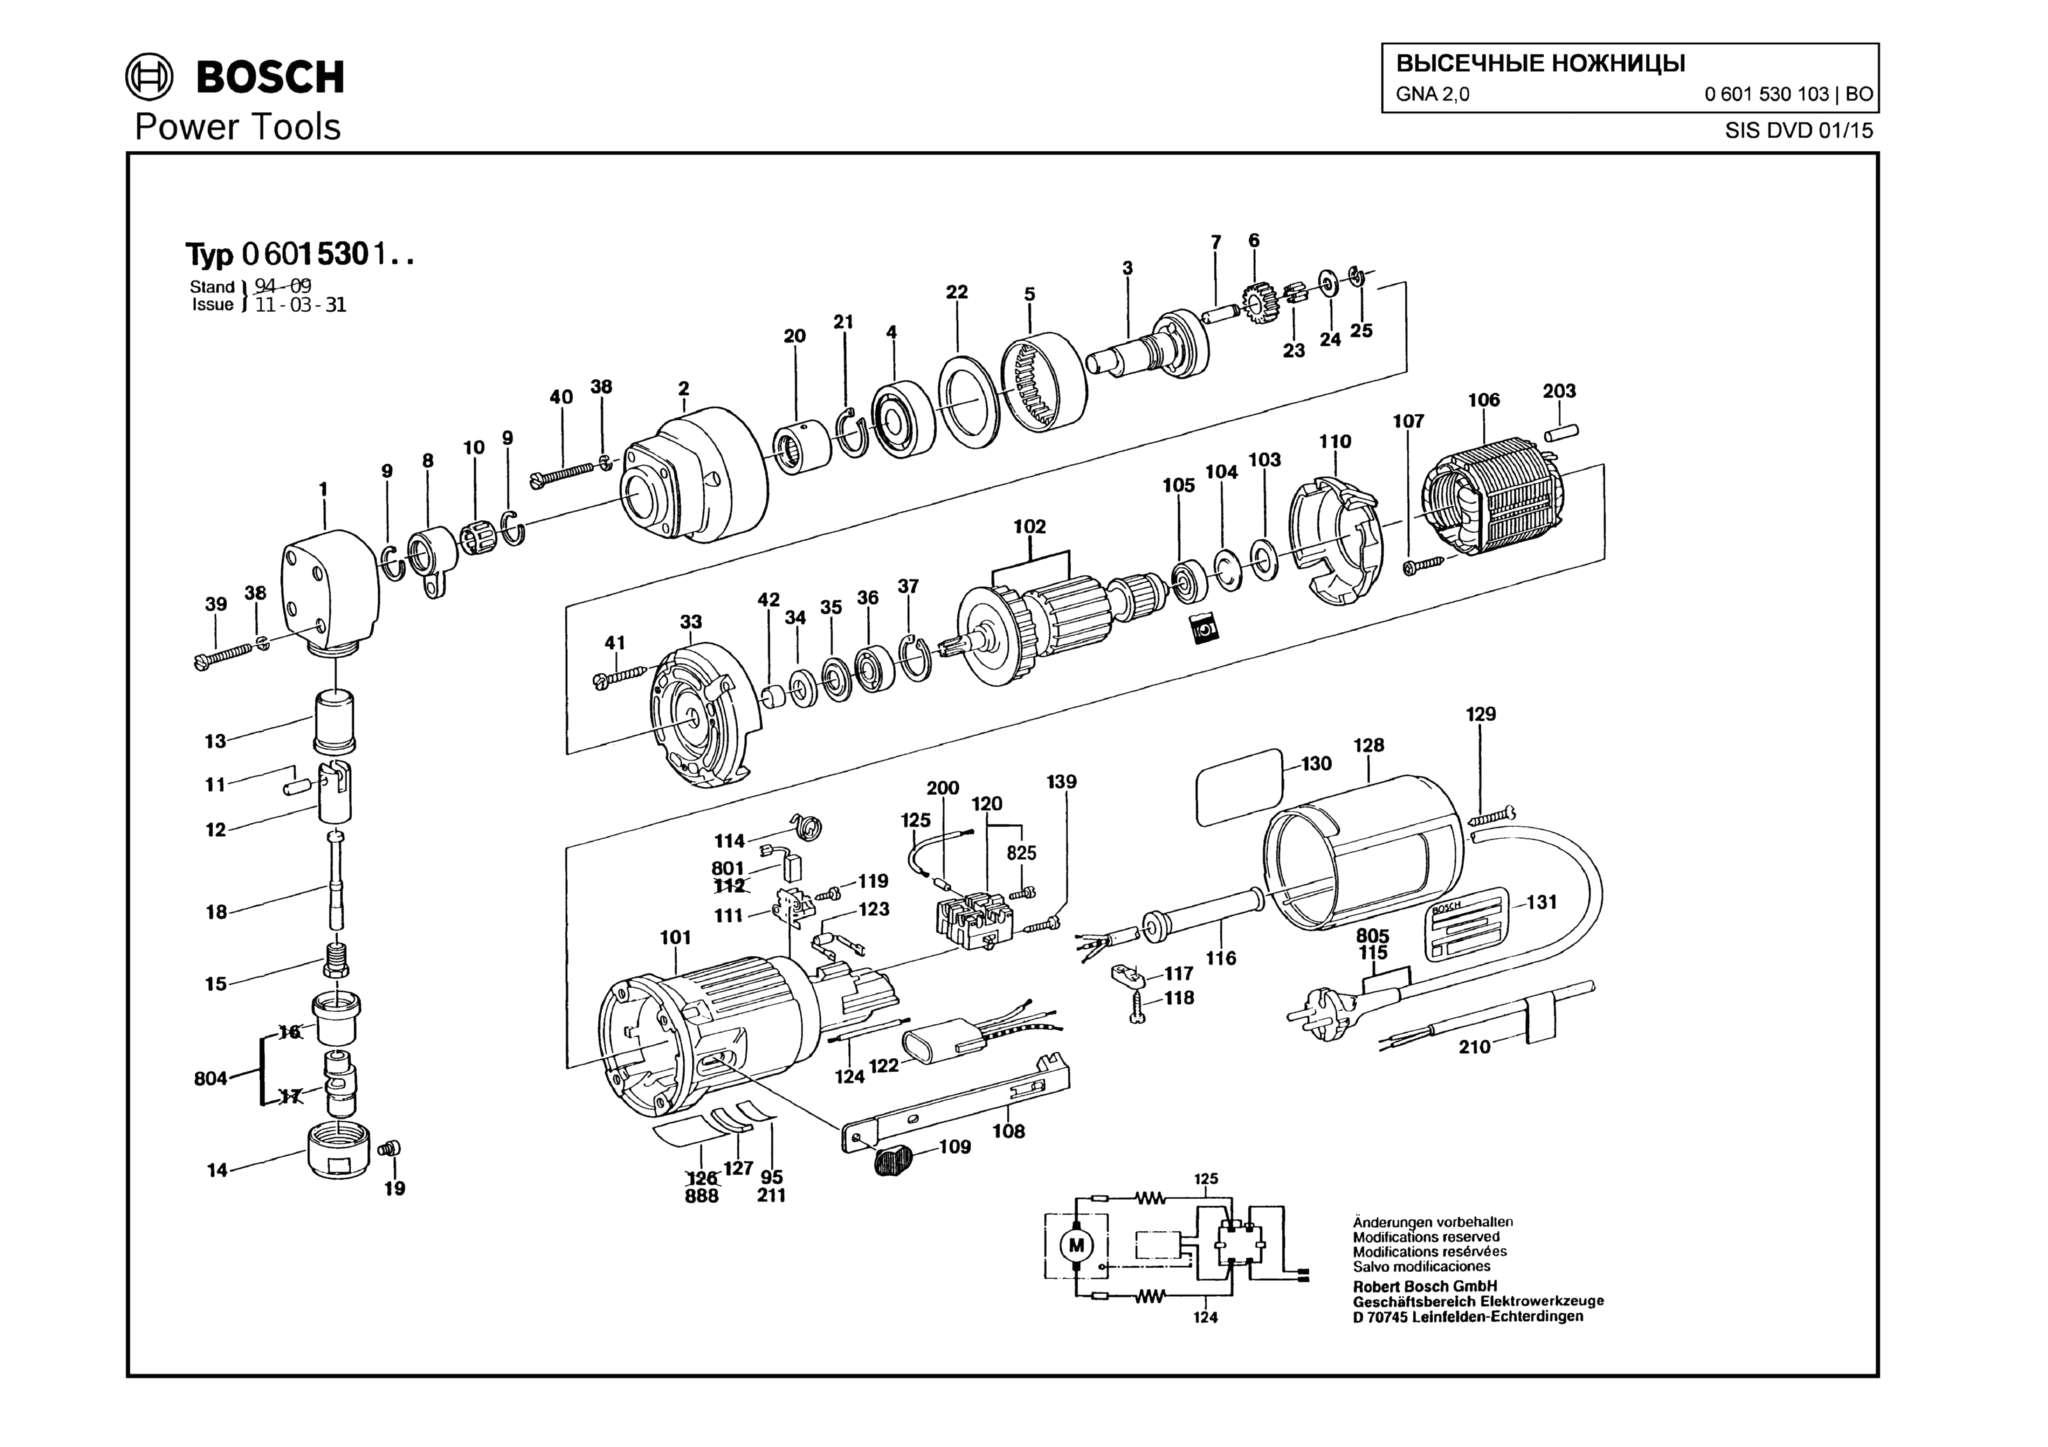 Запчасти, схема и деталировка Bosch GNA 2,0 (ТИП 0601530103)